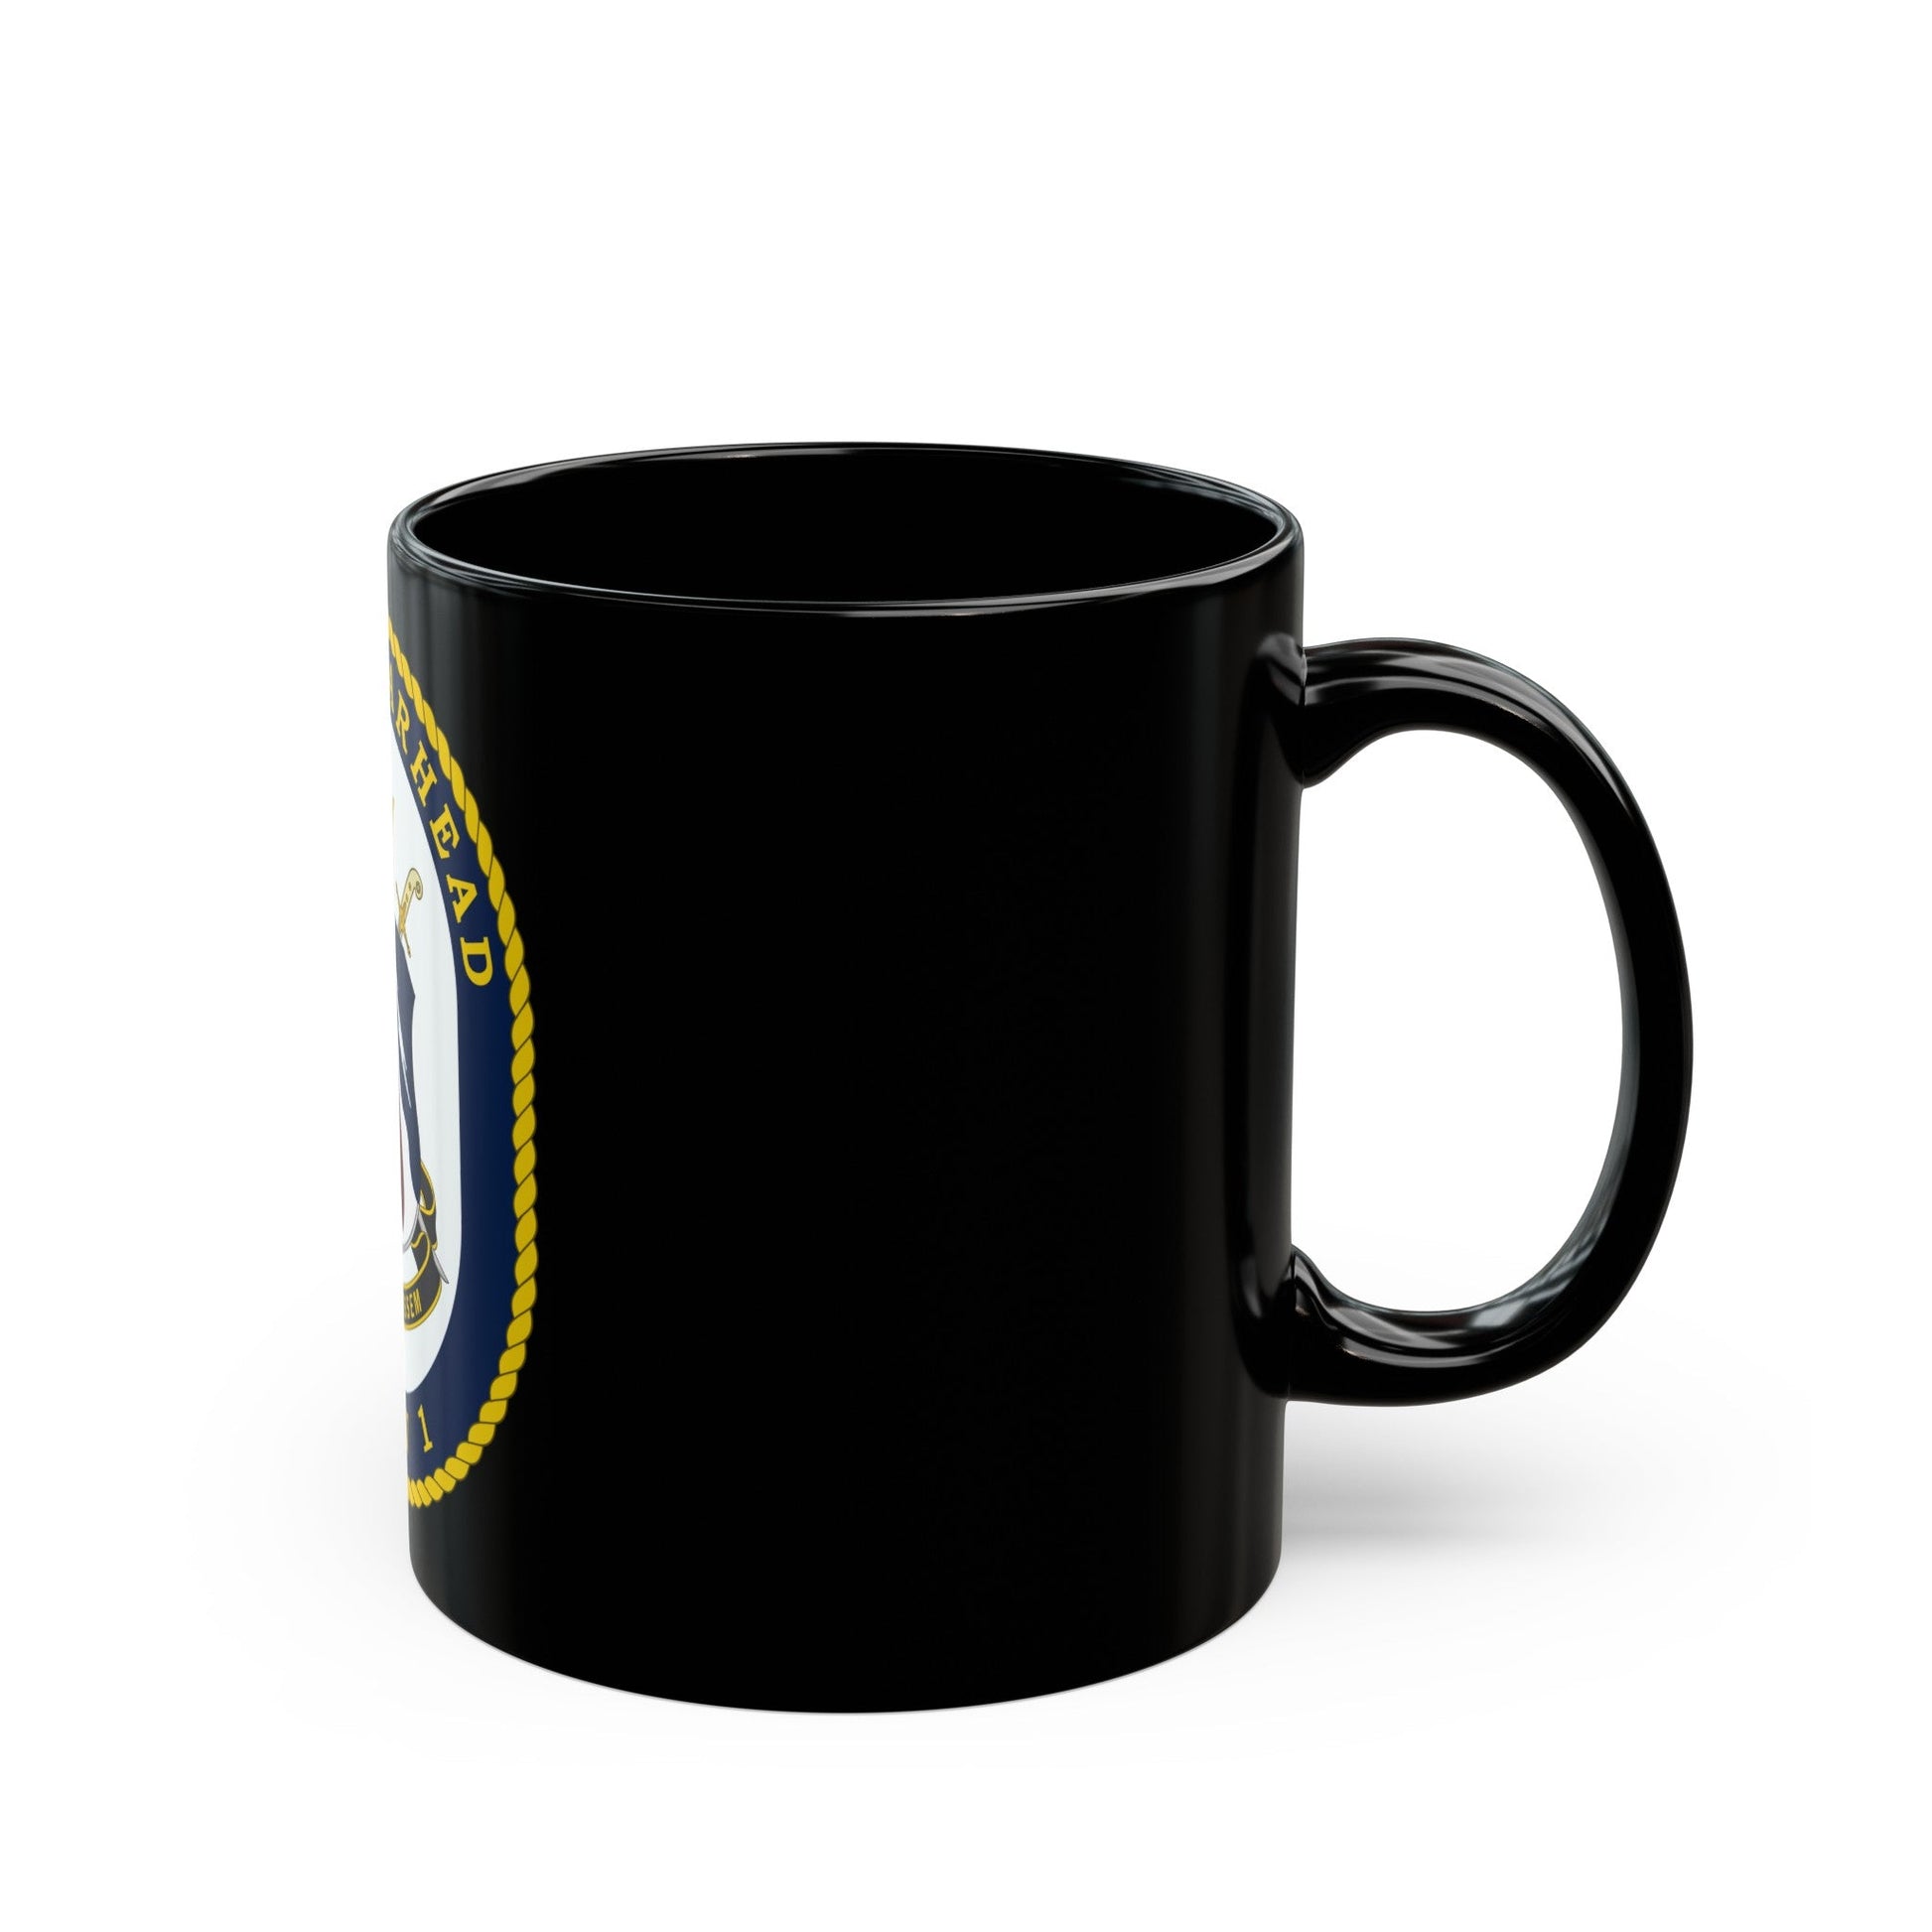 USNS Spearhead JHSV 1 (U.S. Navy) Black Coffee Mug-The Sticker Space